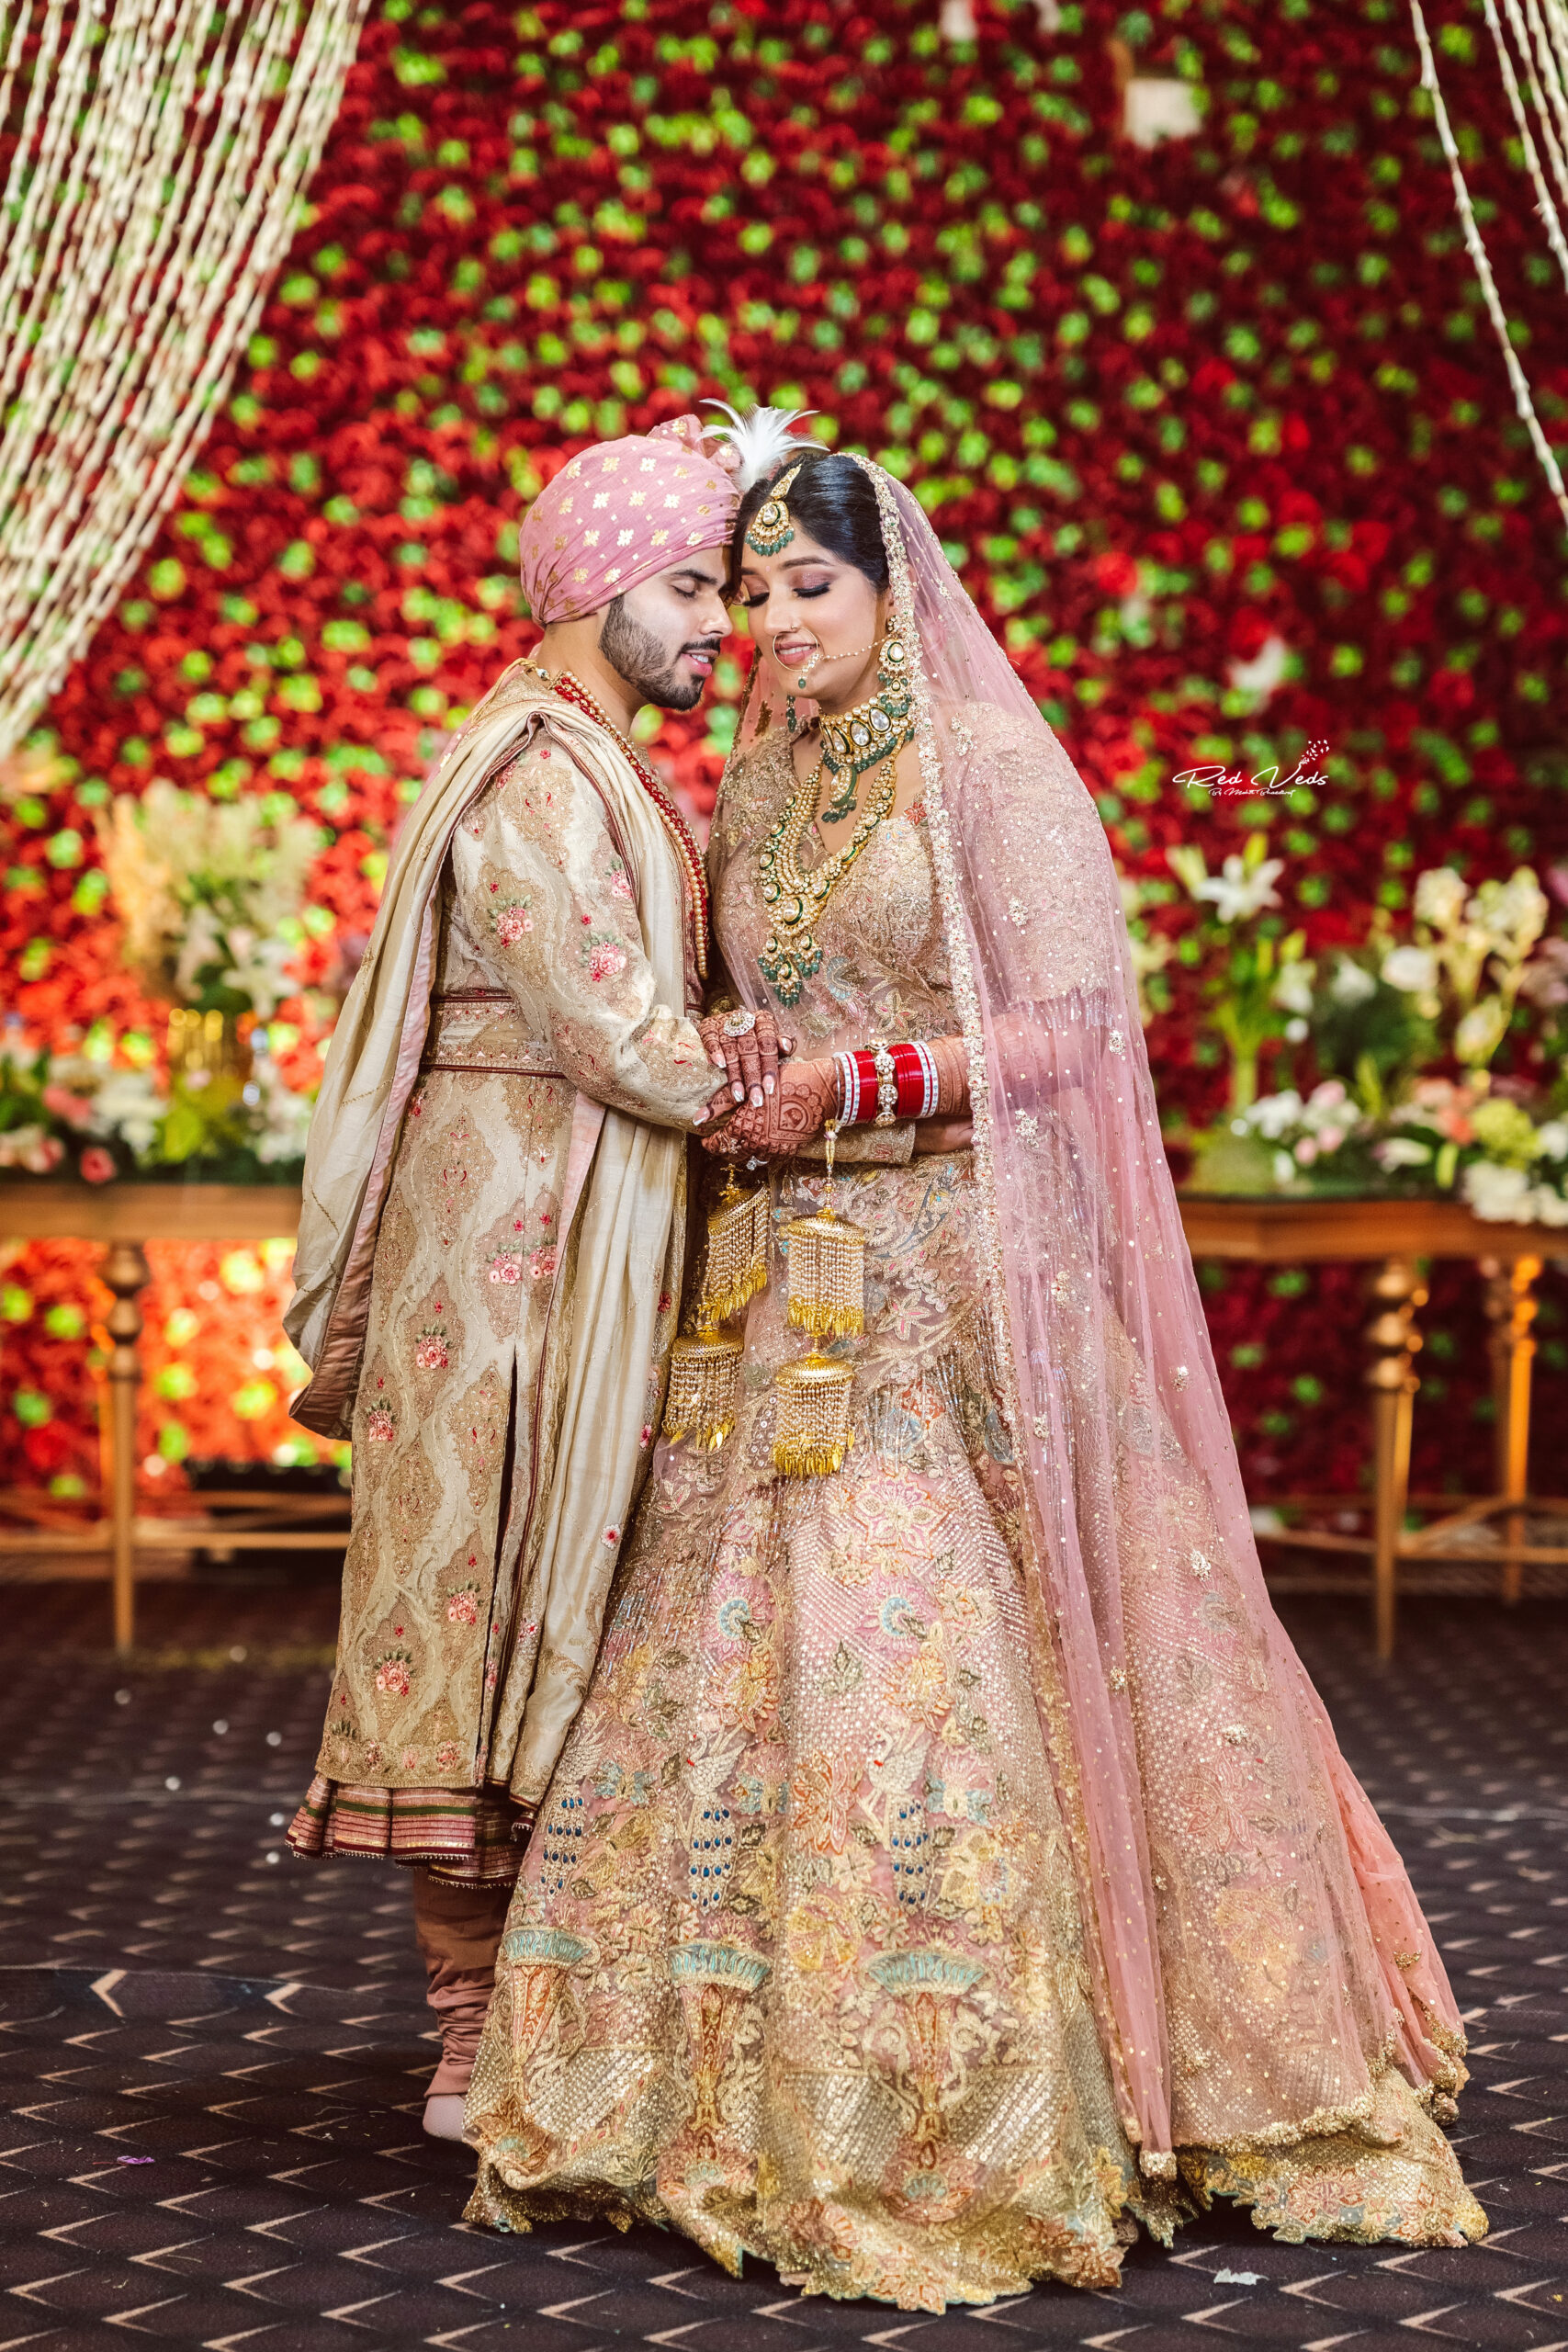 Capturing Everlasting Moments: Wedding Photography Trends | Fotografia de  casamento, Fotos casamento, Ideias de fotos casamento